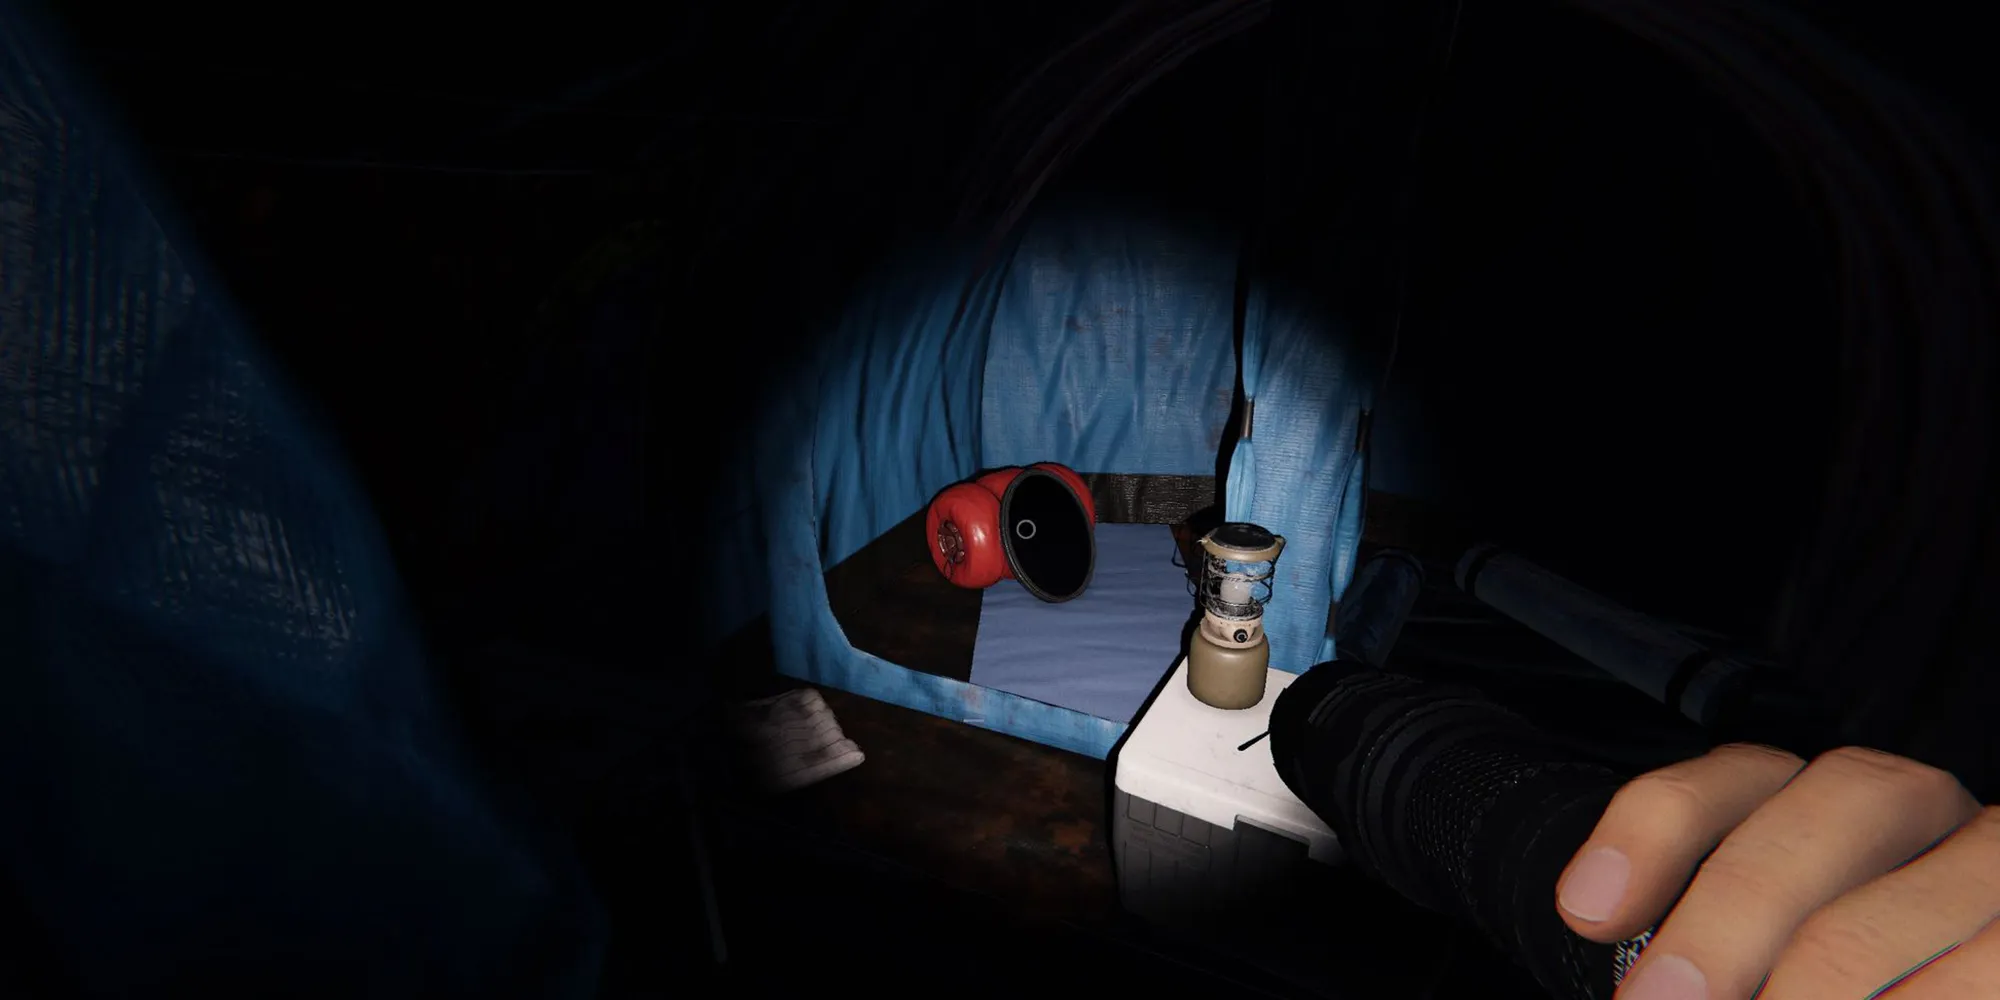 图片展示了位于枫树小屋露营地蓝色帐篷内地面上的一面幽灵镜。